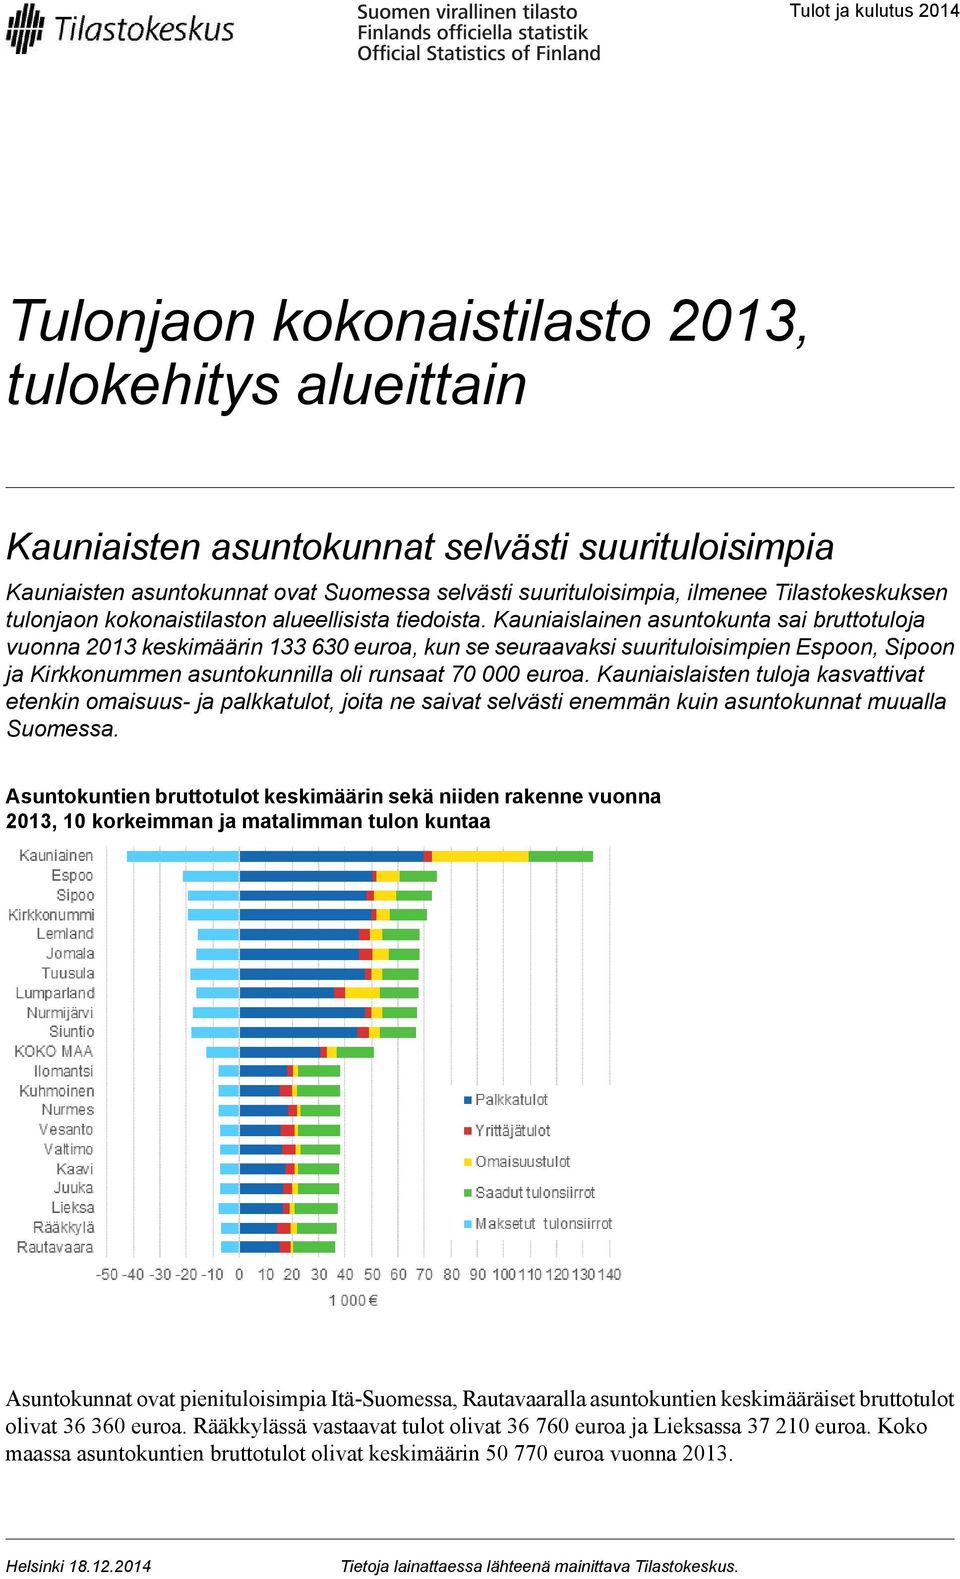 Kauniaislainen asuntokunta sai bruttotuloja vuonna 2013 keskimäärin 133 630 euroa, kun se seuraavaksi suurituloisimpien Espoon, Sipoon ja Kirkkonummen asuntokunnilla oli runsaat 70 000 euroa.